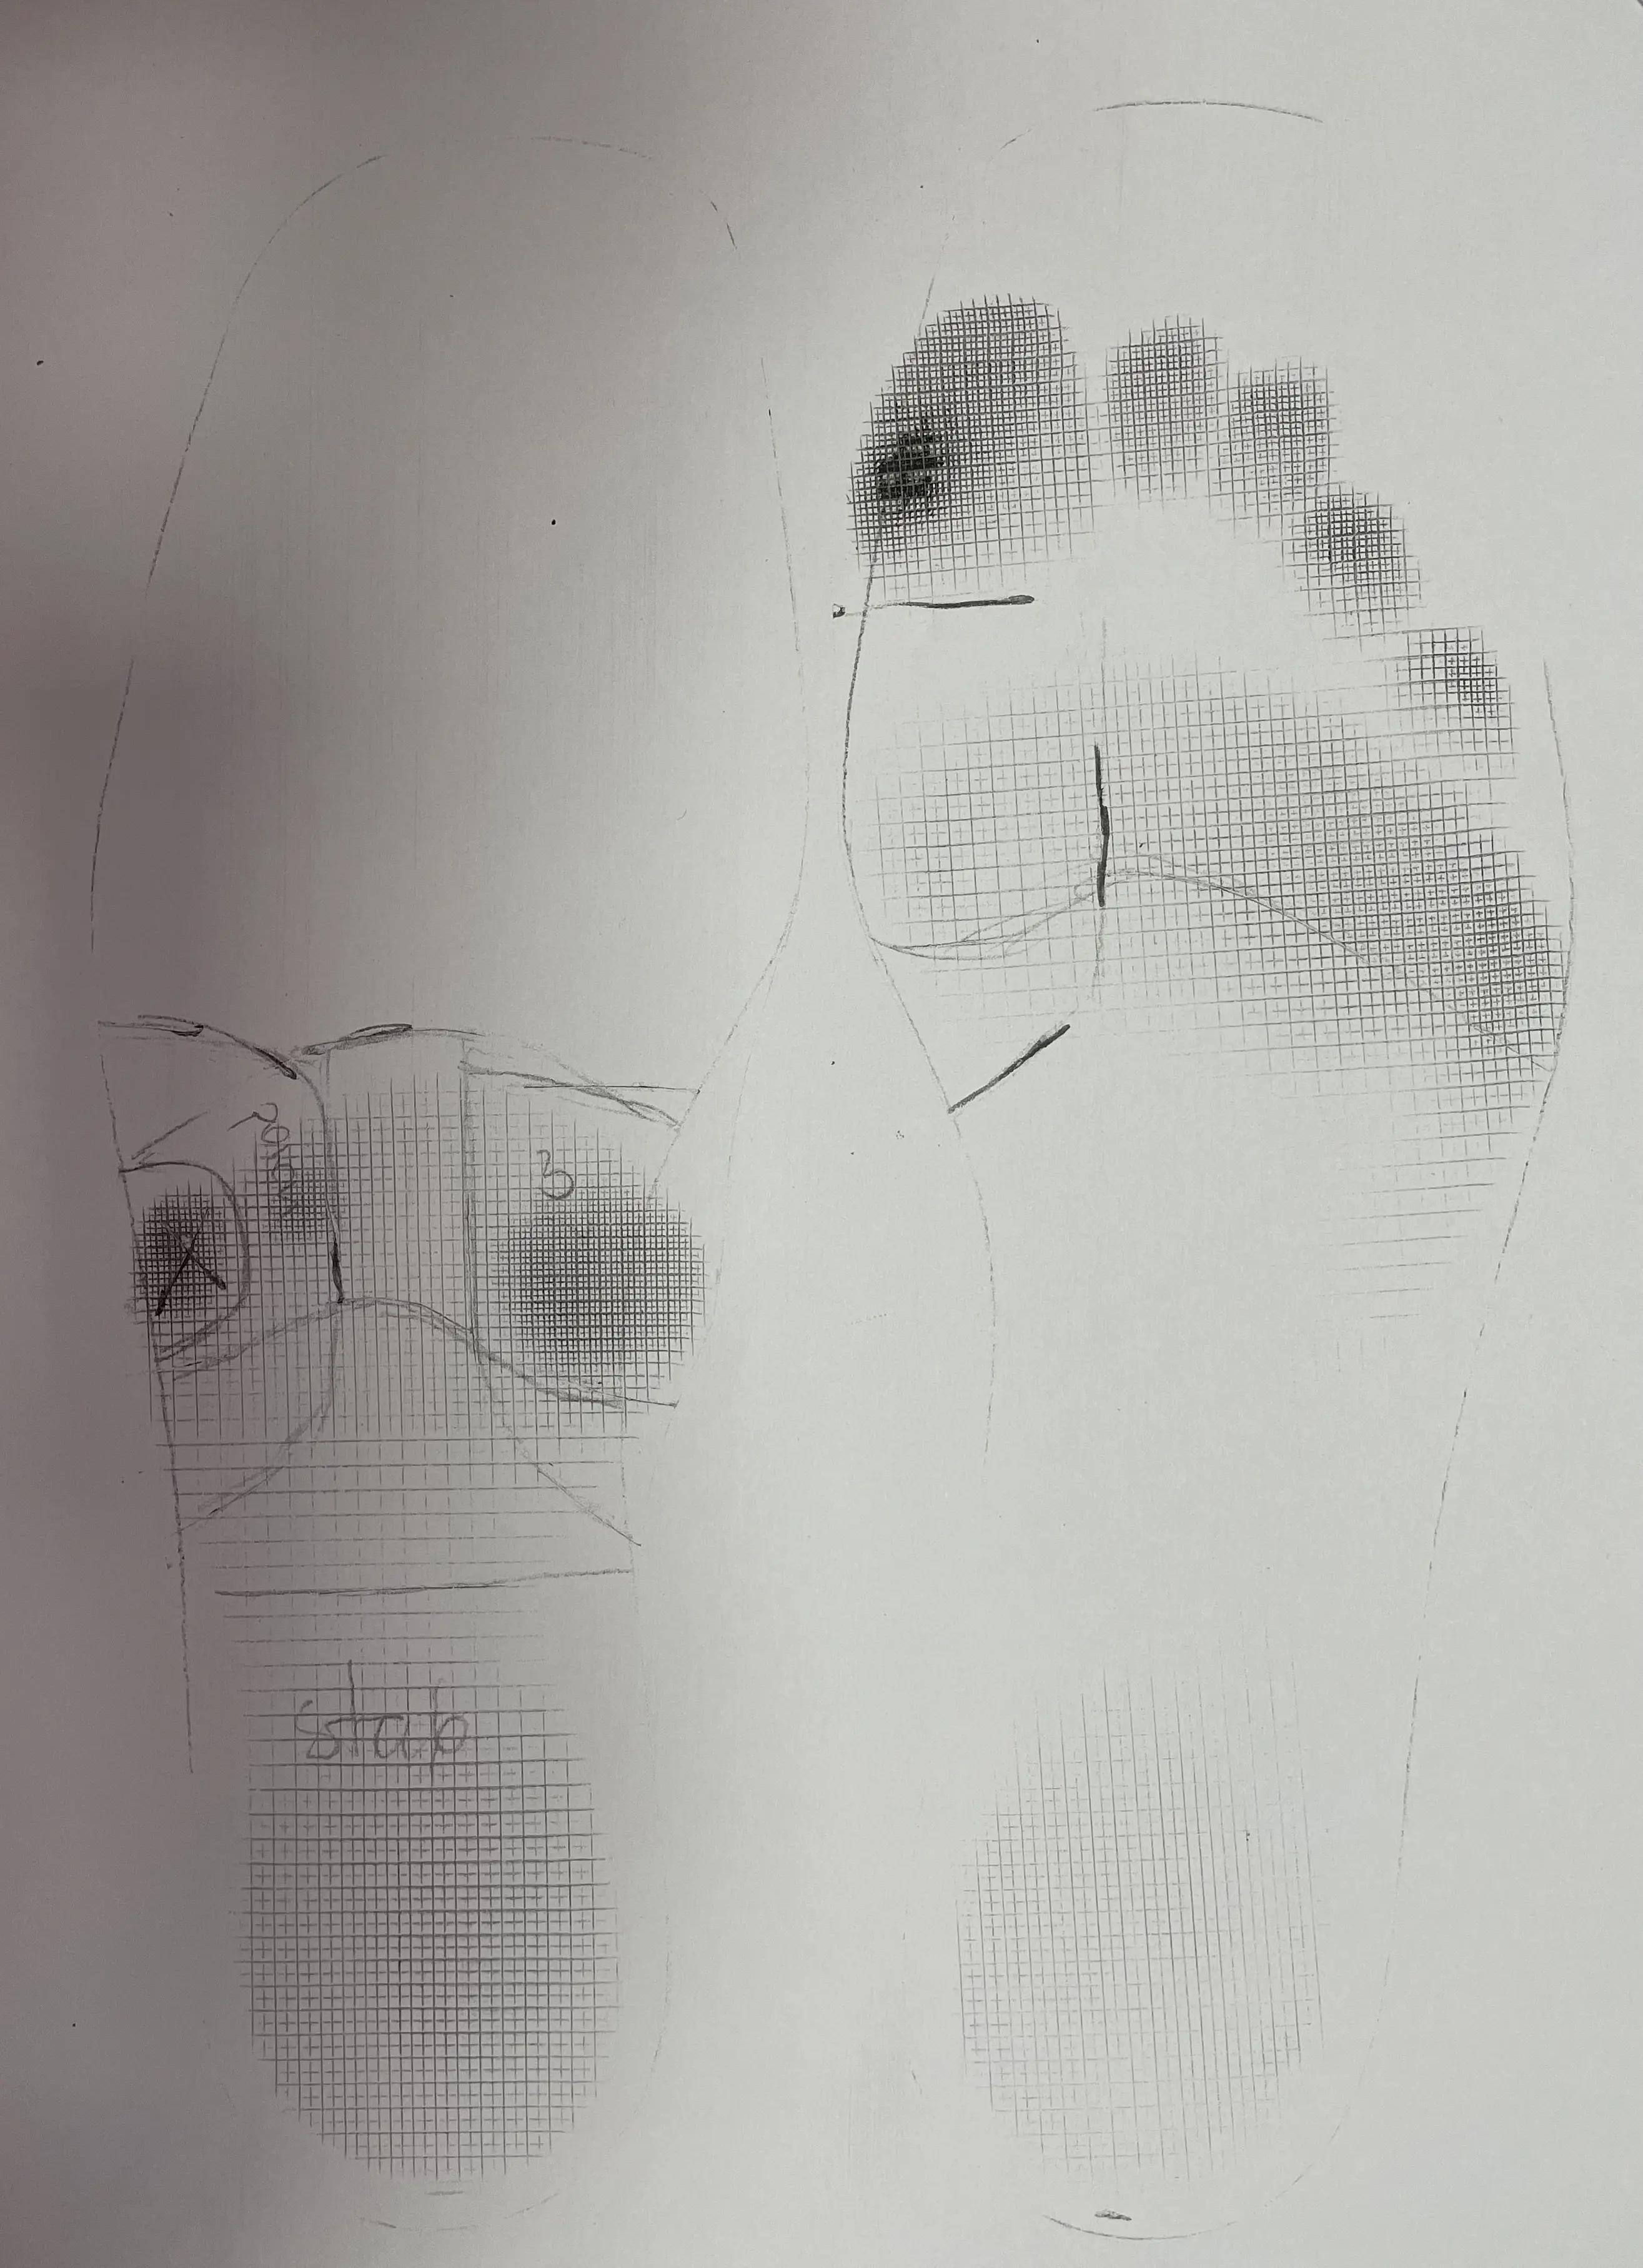 Odcisk stopy po urazowej amputacji stopy